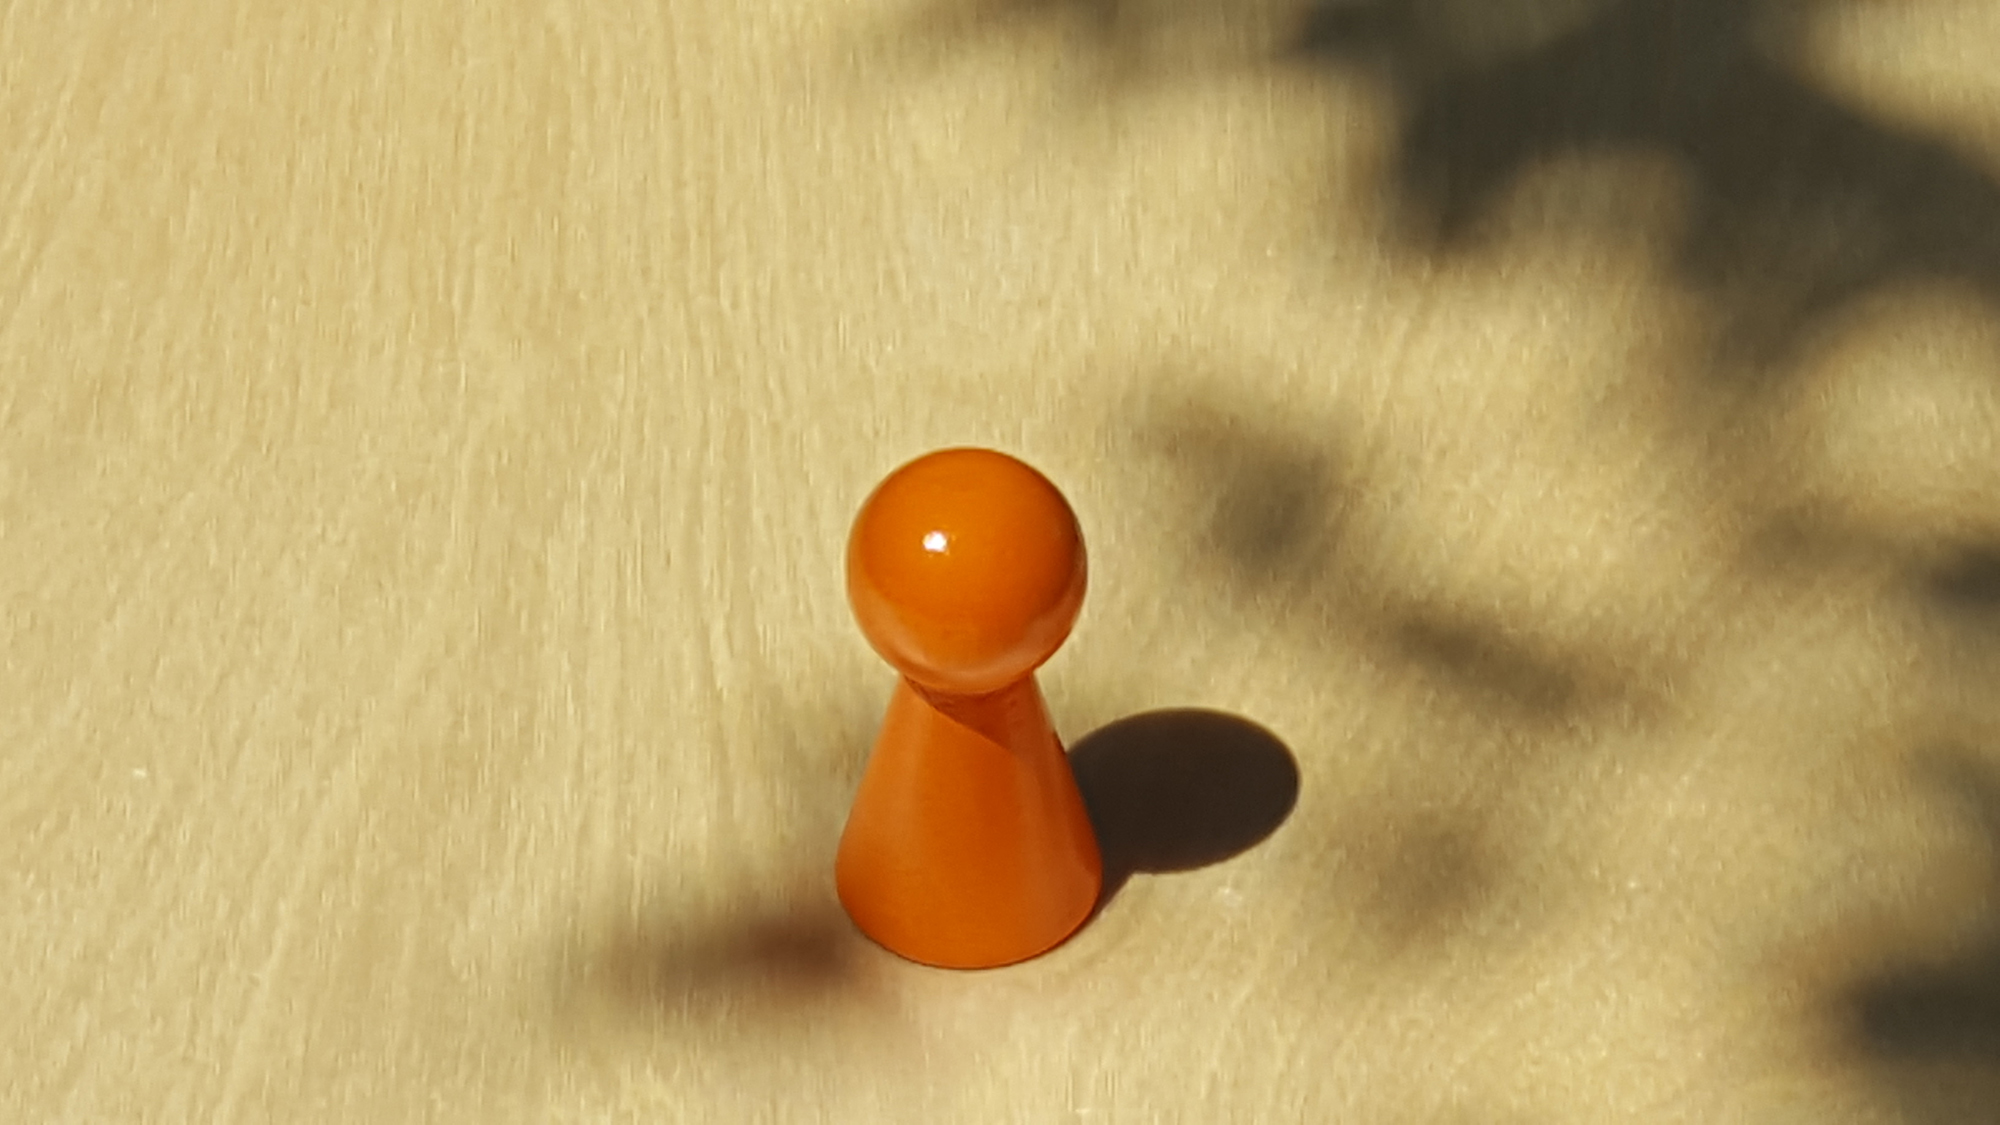 www.systembrett.at · Systembrett-Artikel · Einzel-Figur 6 cm in orange (ohne Augen);